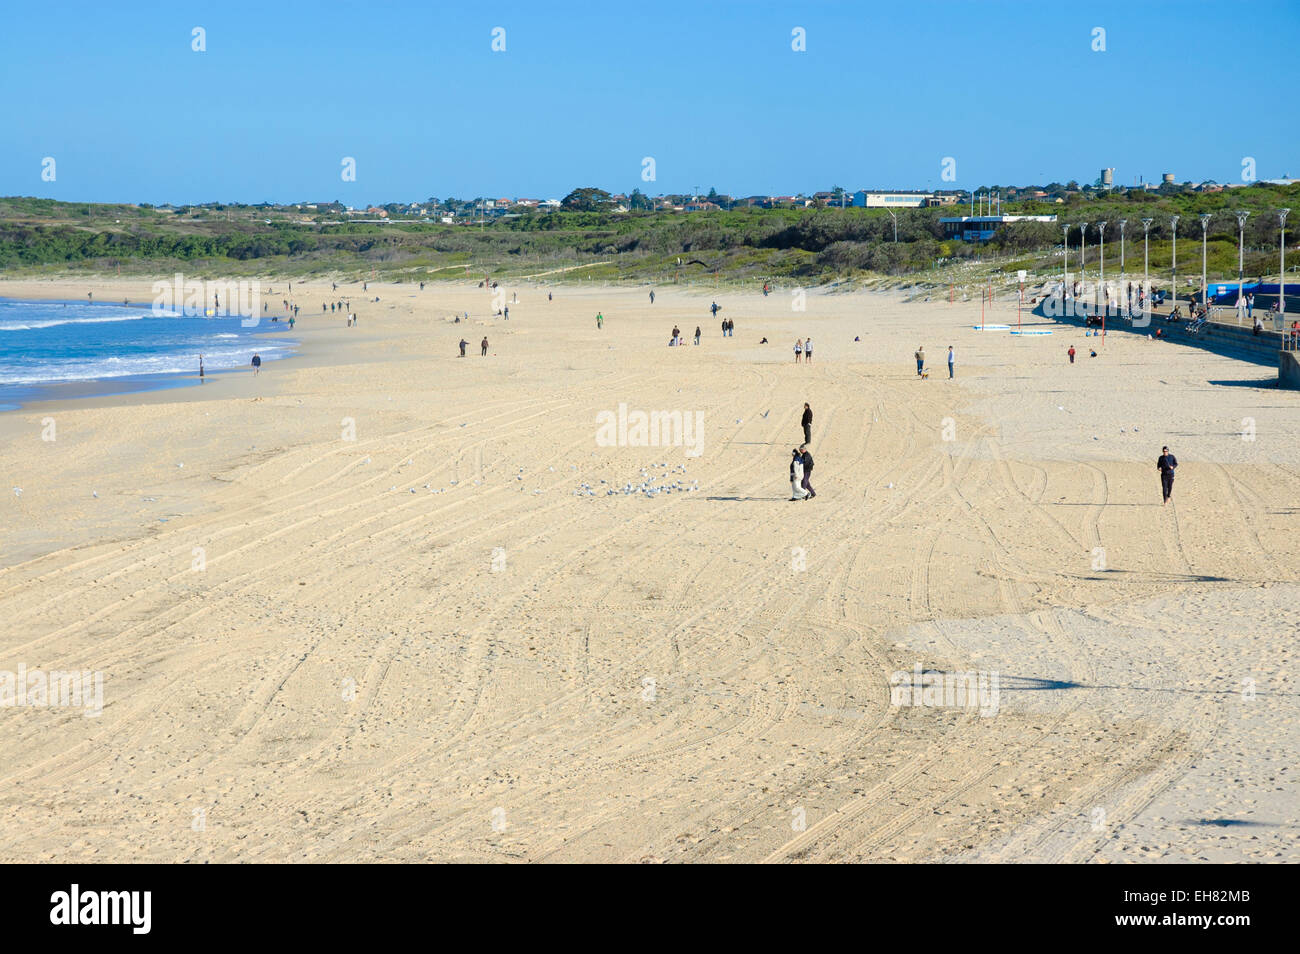 Maroubra Beach dans la banlieue sud-est de Sydney, Australie, en regardant vers le sud - et à vide ! Banque D'Images